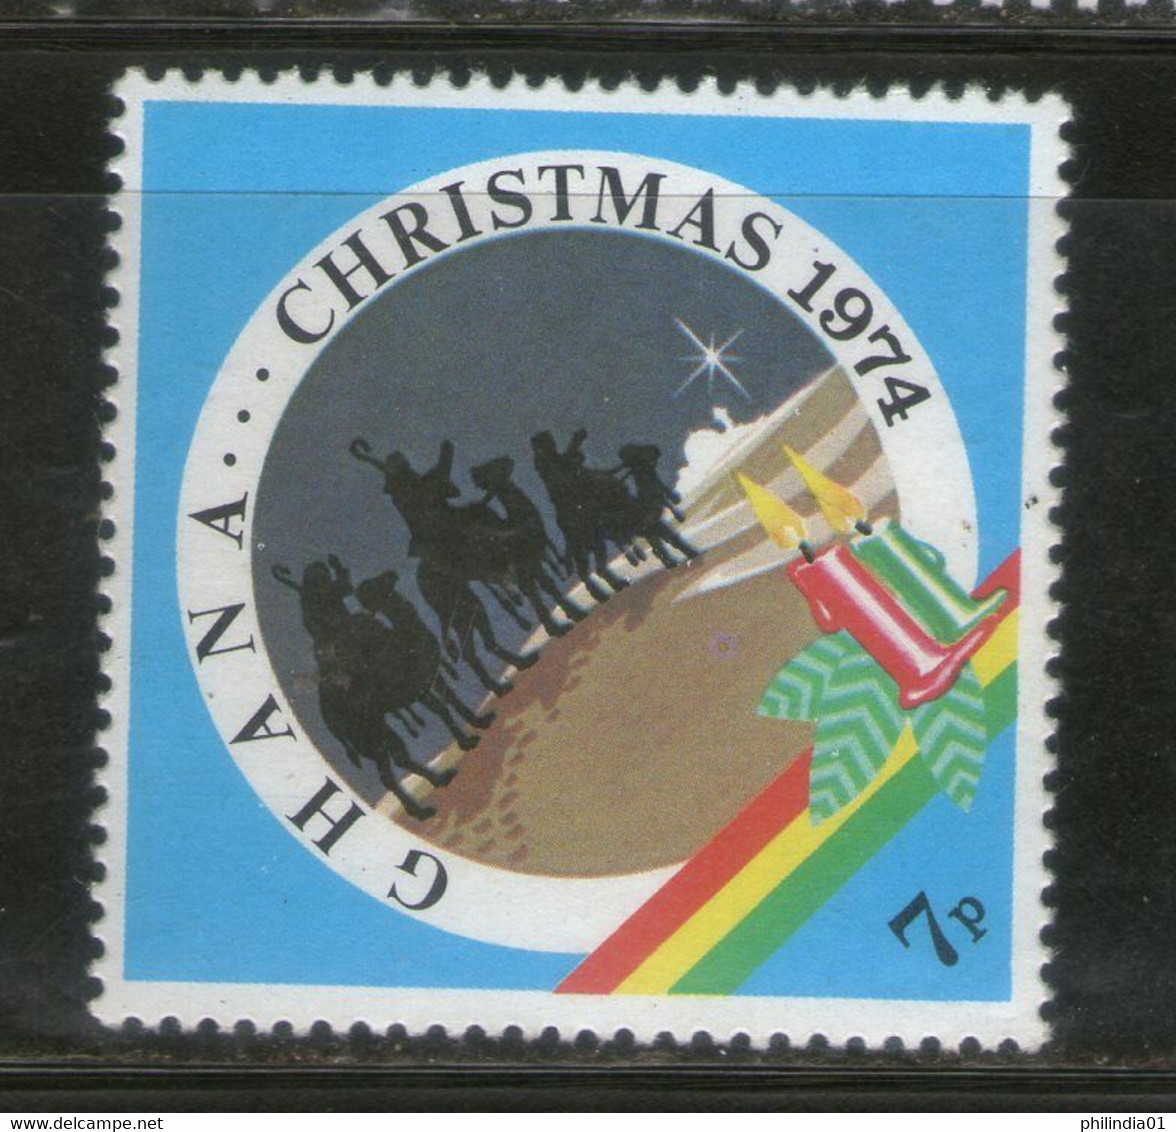 Ghana 1974 Christmas Sc 545 MNH # 469 - Christmas